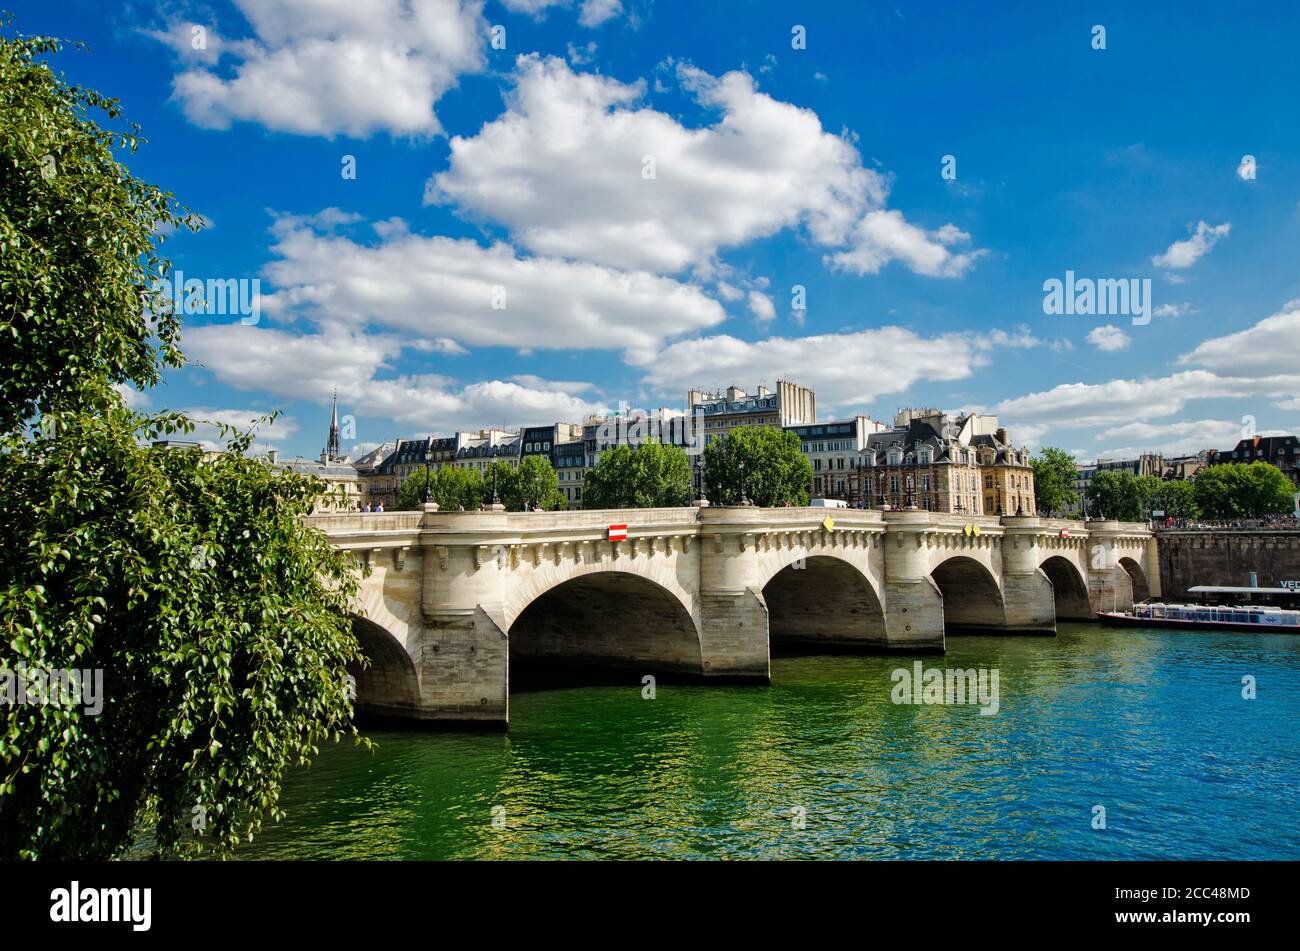 Die Pont Neuf (deutsch: Neue Brücke) ist die älteste erhaltene Brücke über die seine in Paris. Der Bau begann 1578 und dauerte bis 1607. Stockfoto